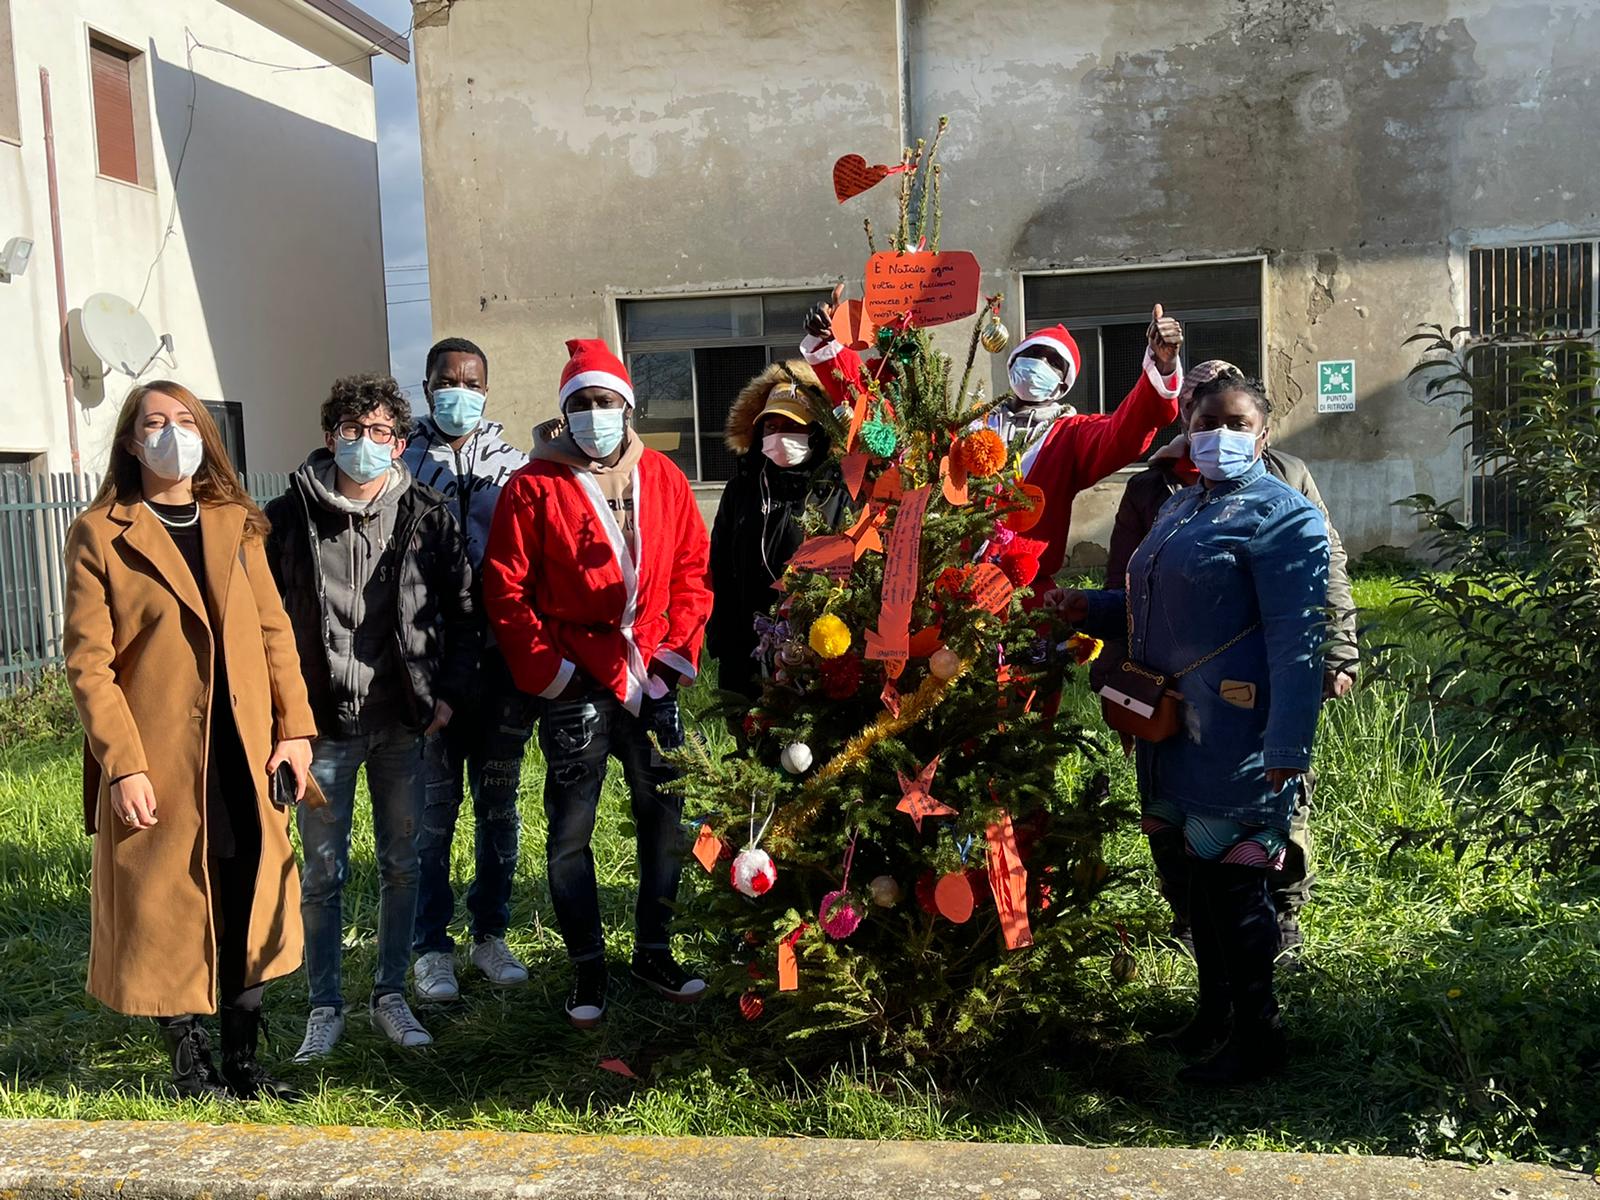 A Solopaca un albero di Natale illuminato dalla solidarietà e dall’integrazione